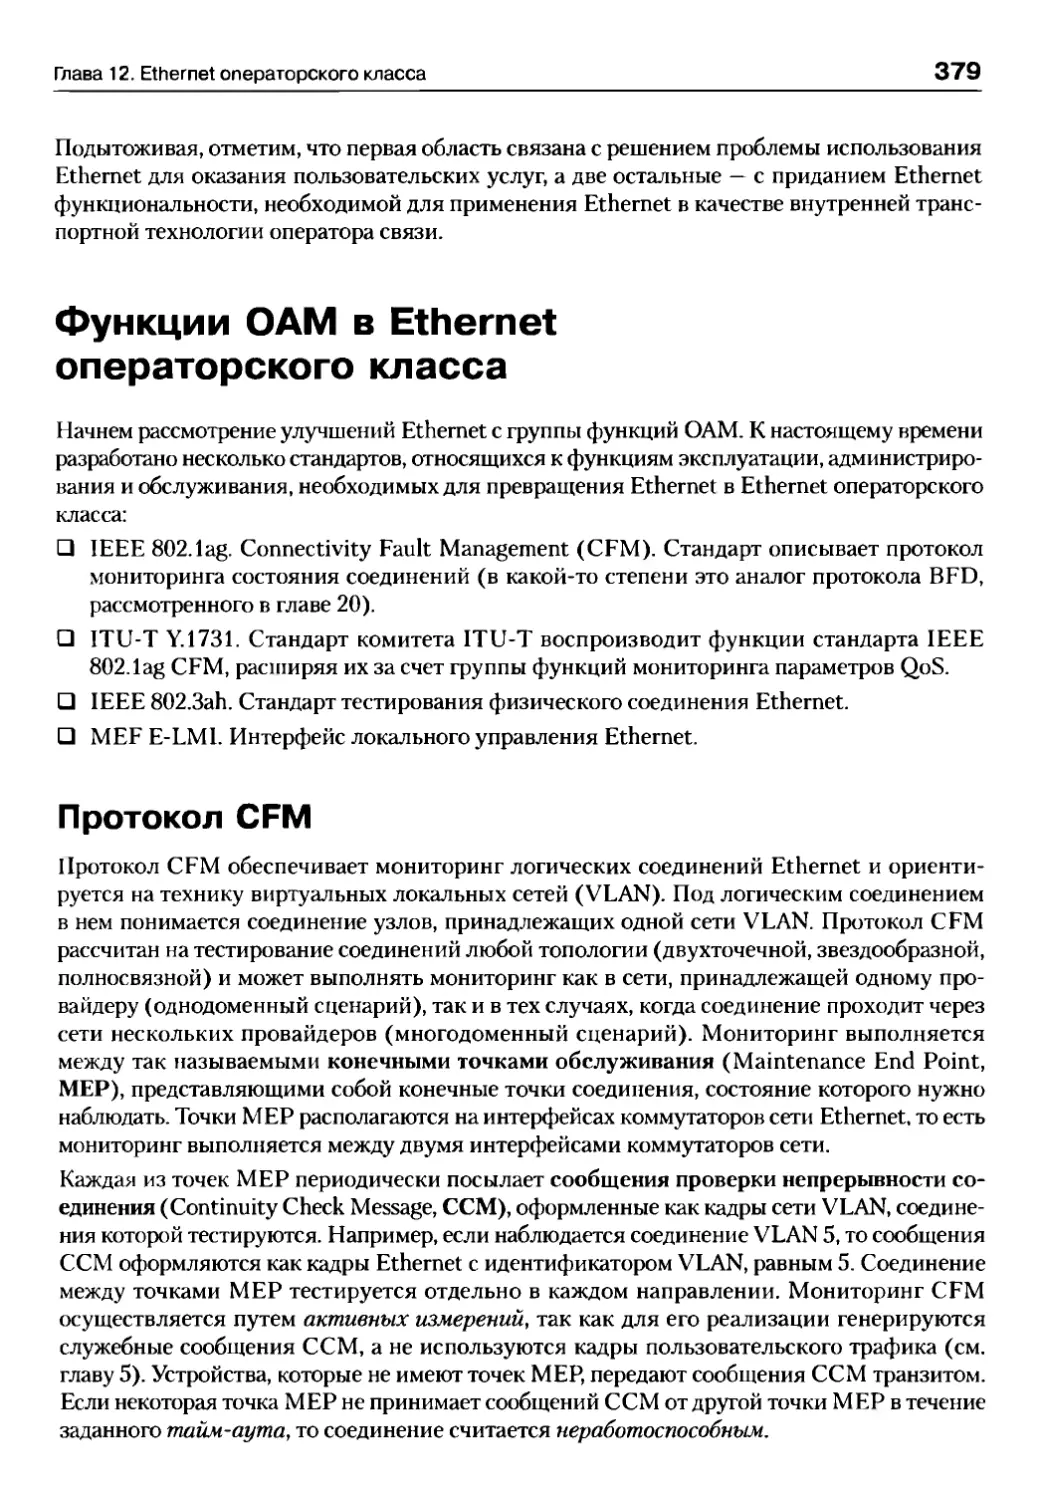 Функции OAM в Ethernet операторского класса